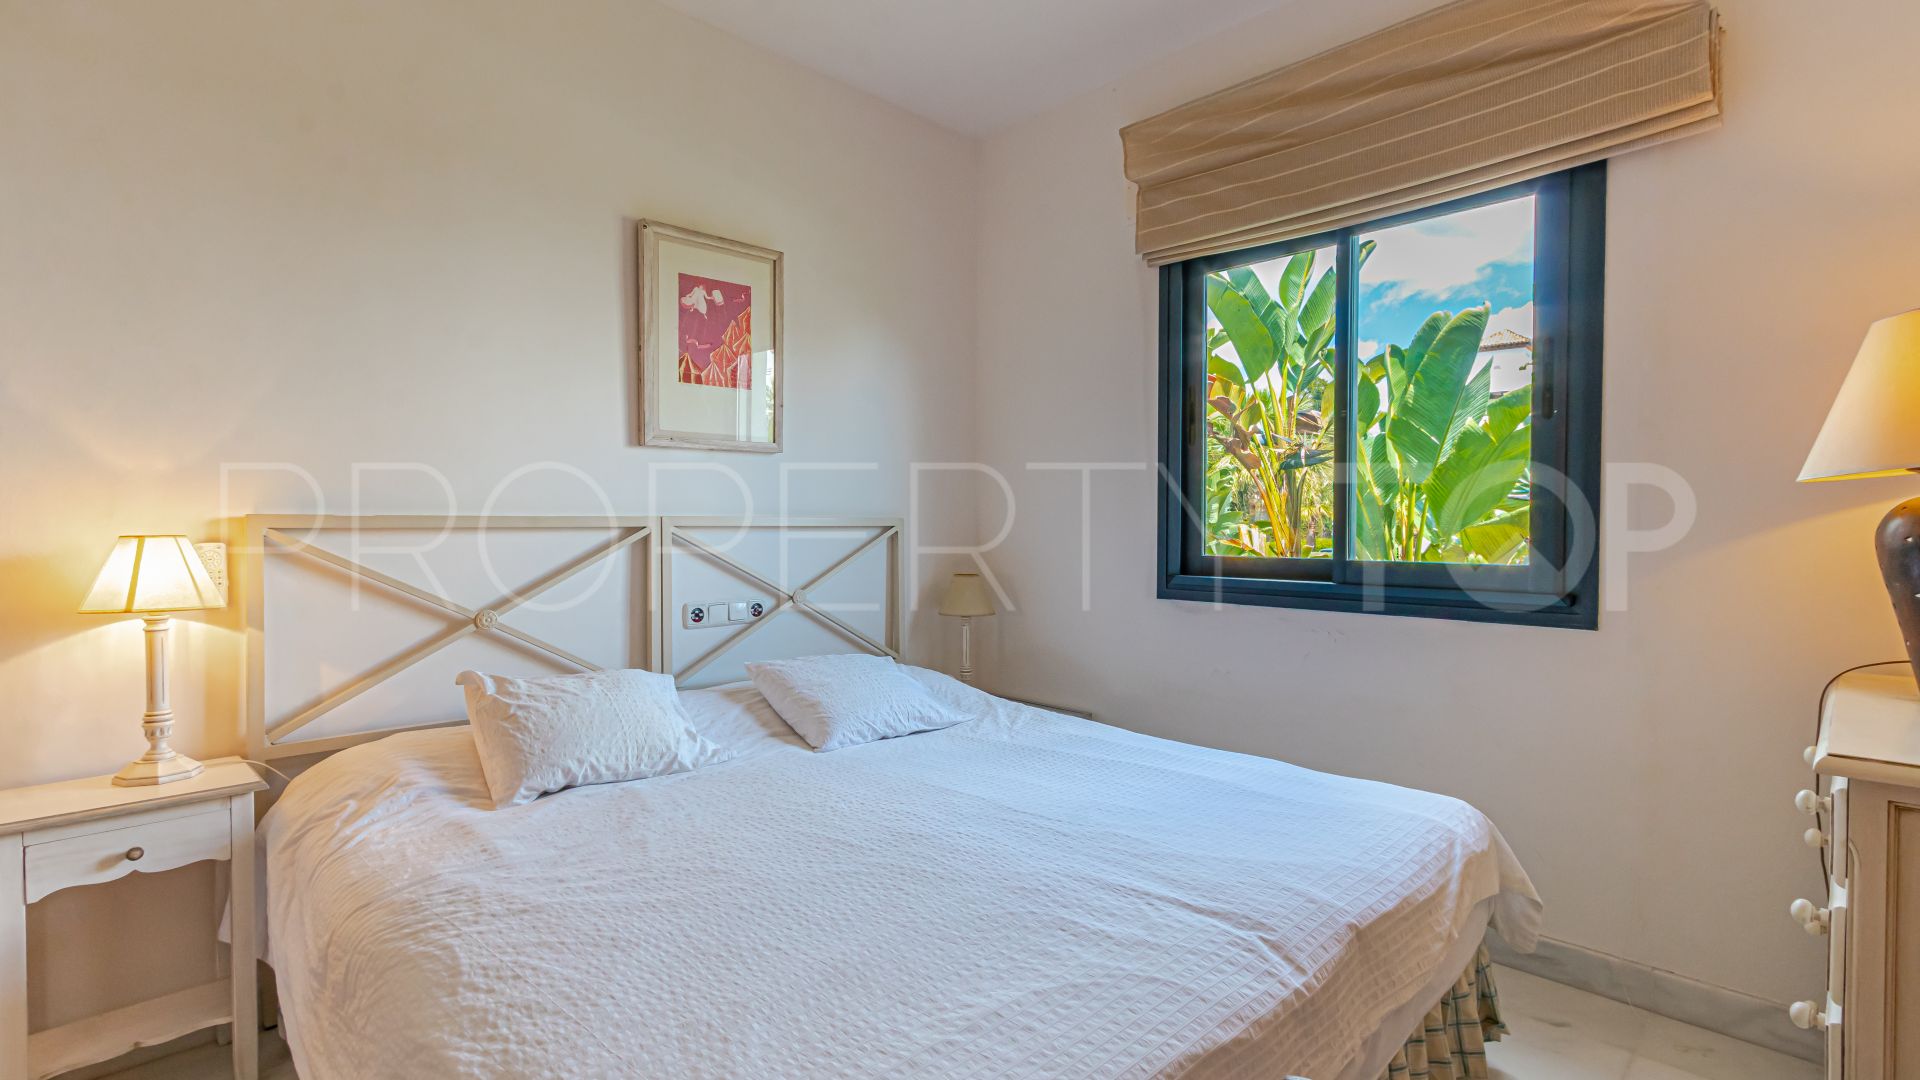 4 bedrooms apartment in El Polo de Sotogrande for sale